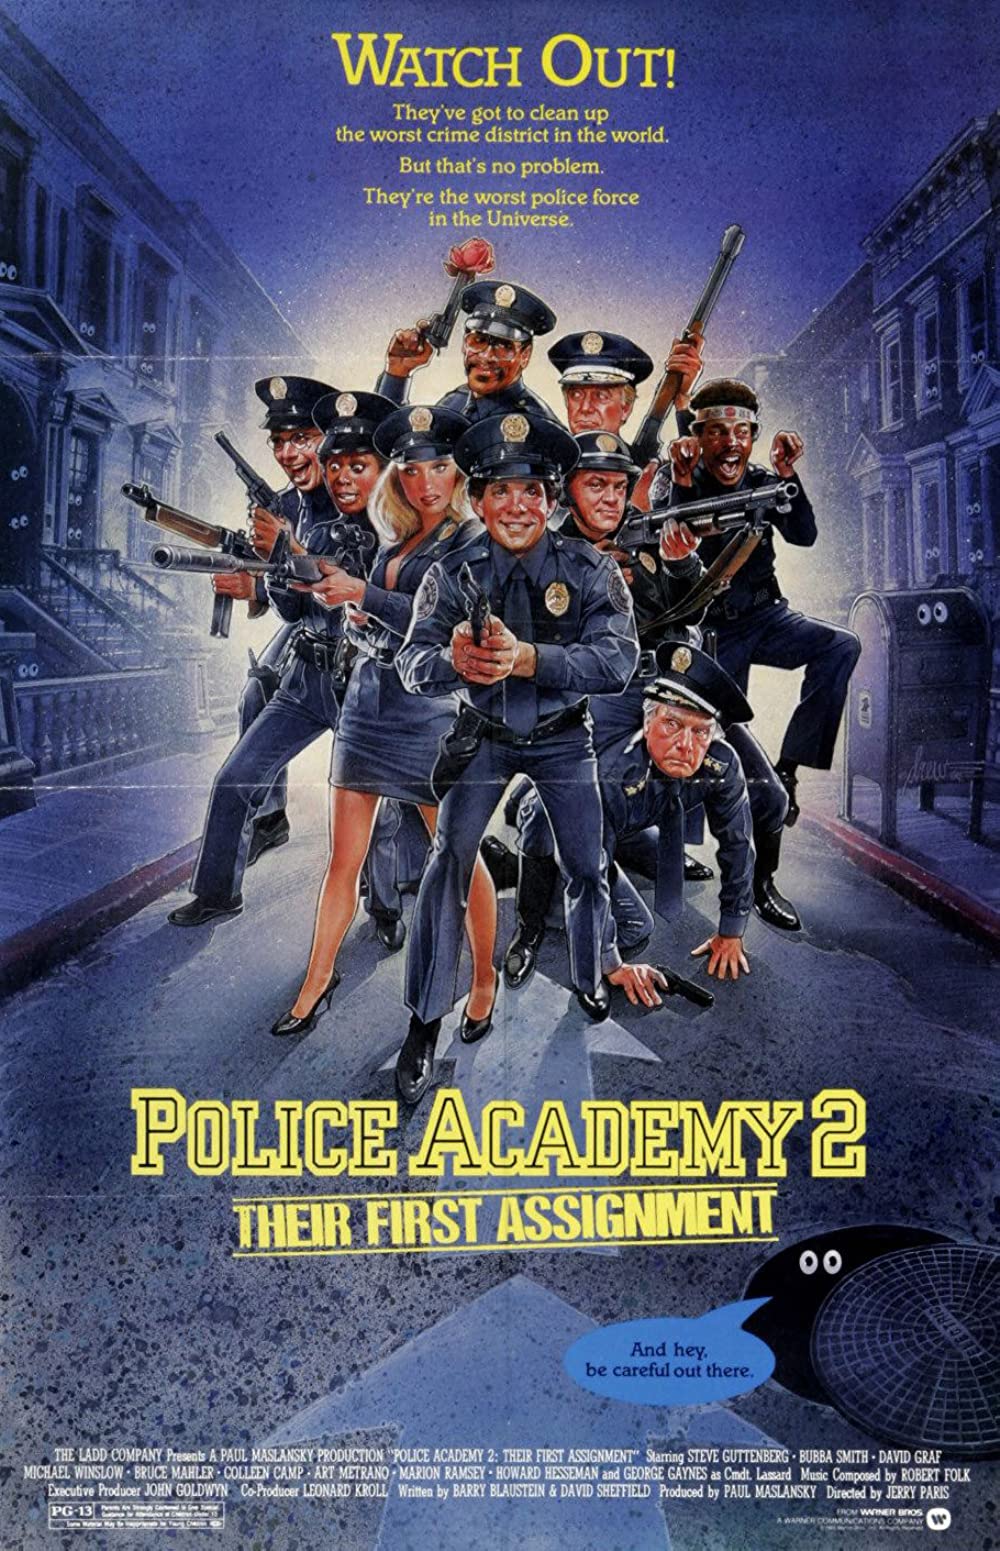 Filmbeschreibung zu Police Academy 2 - Jetzt geht's erst richtig los